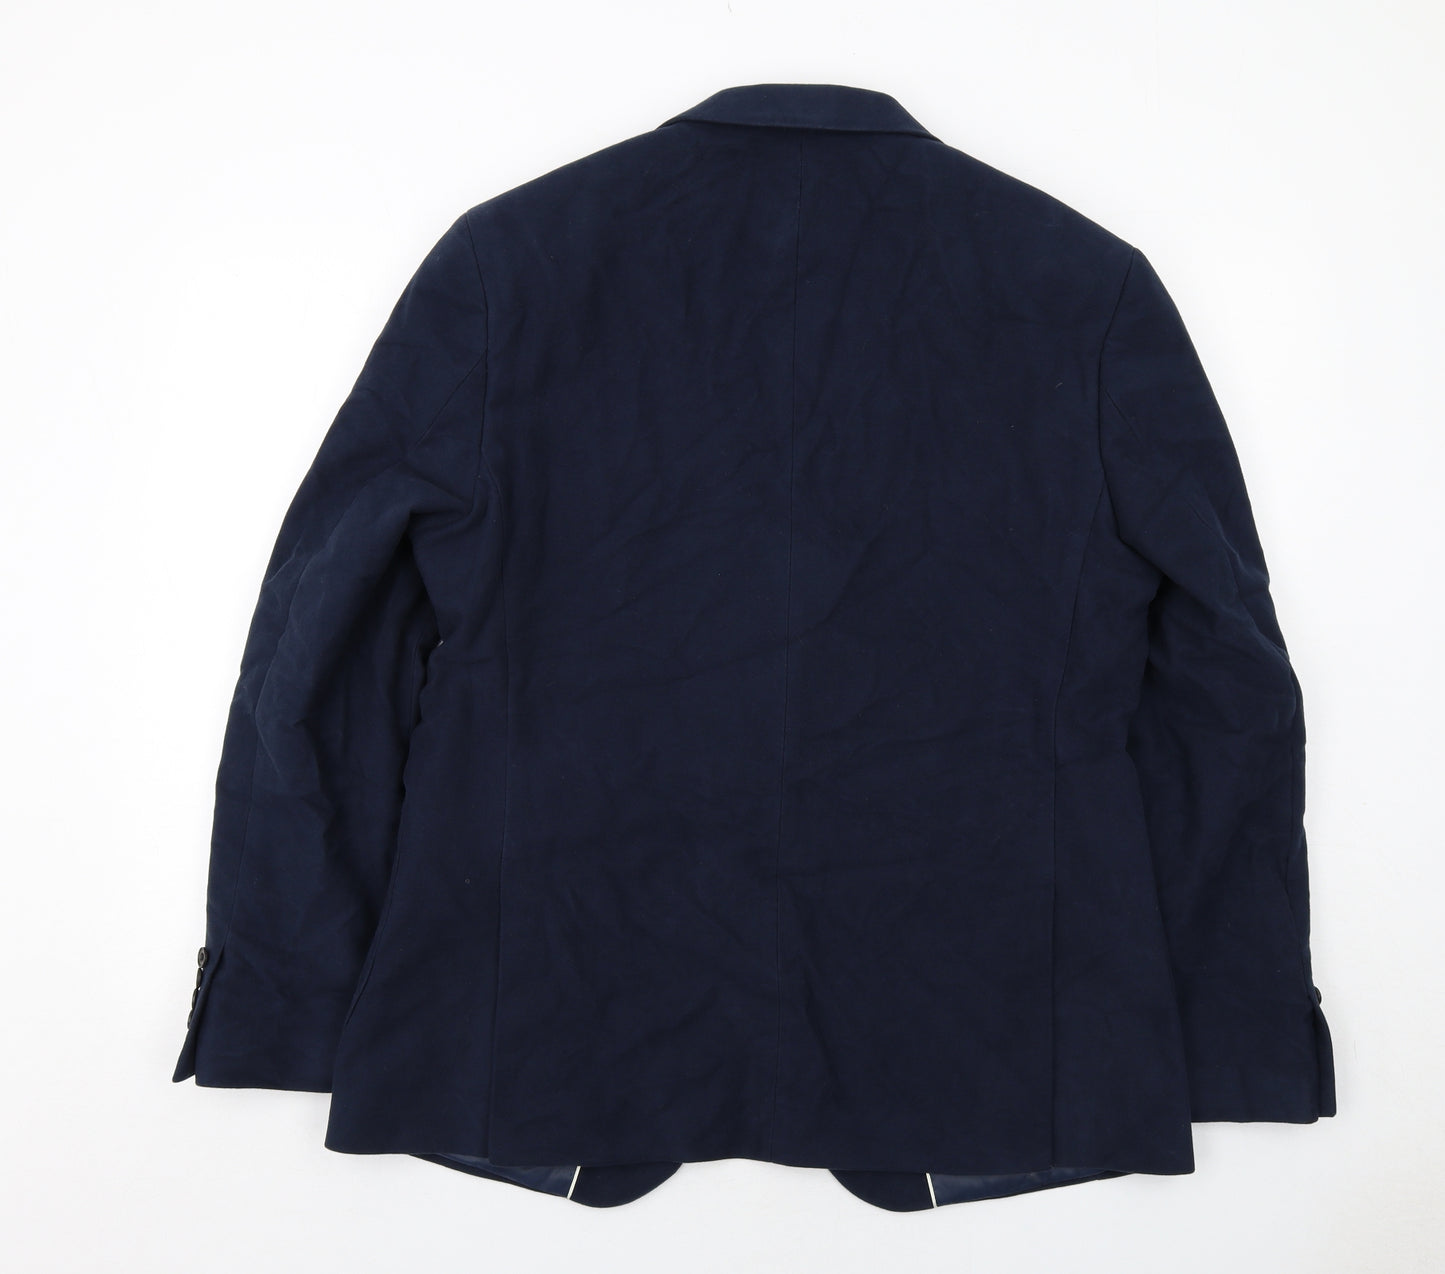 Emmetex Mens Blue Polyester Jacket Suit Jacket Size 44 Regular